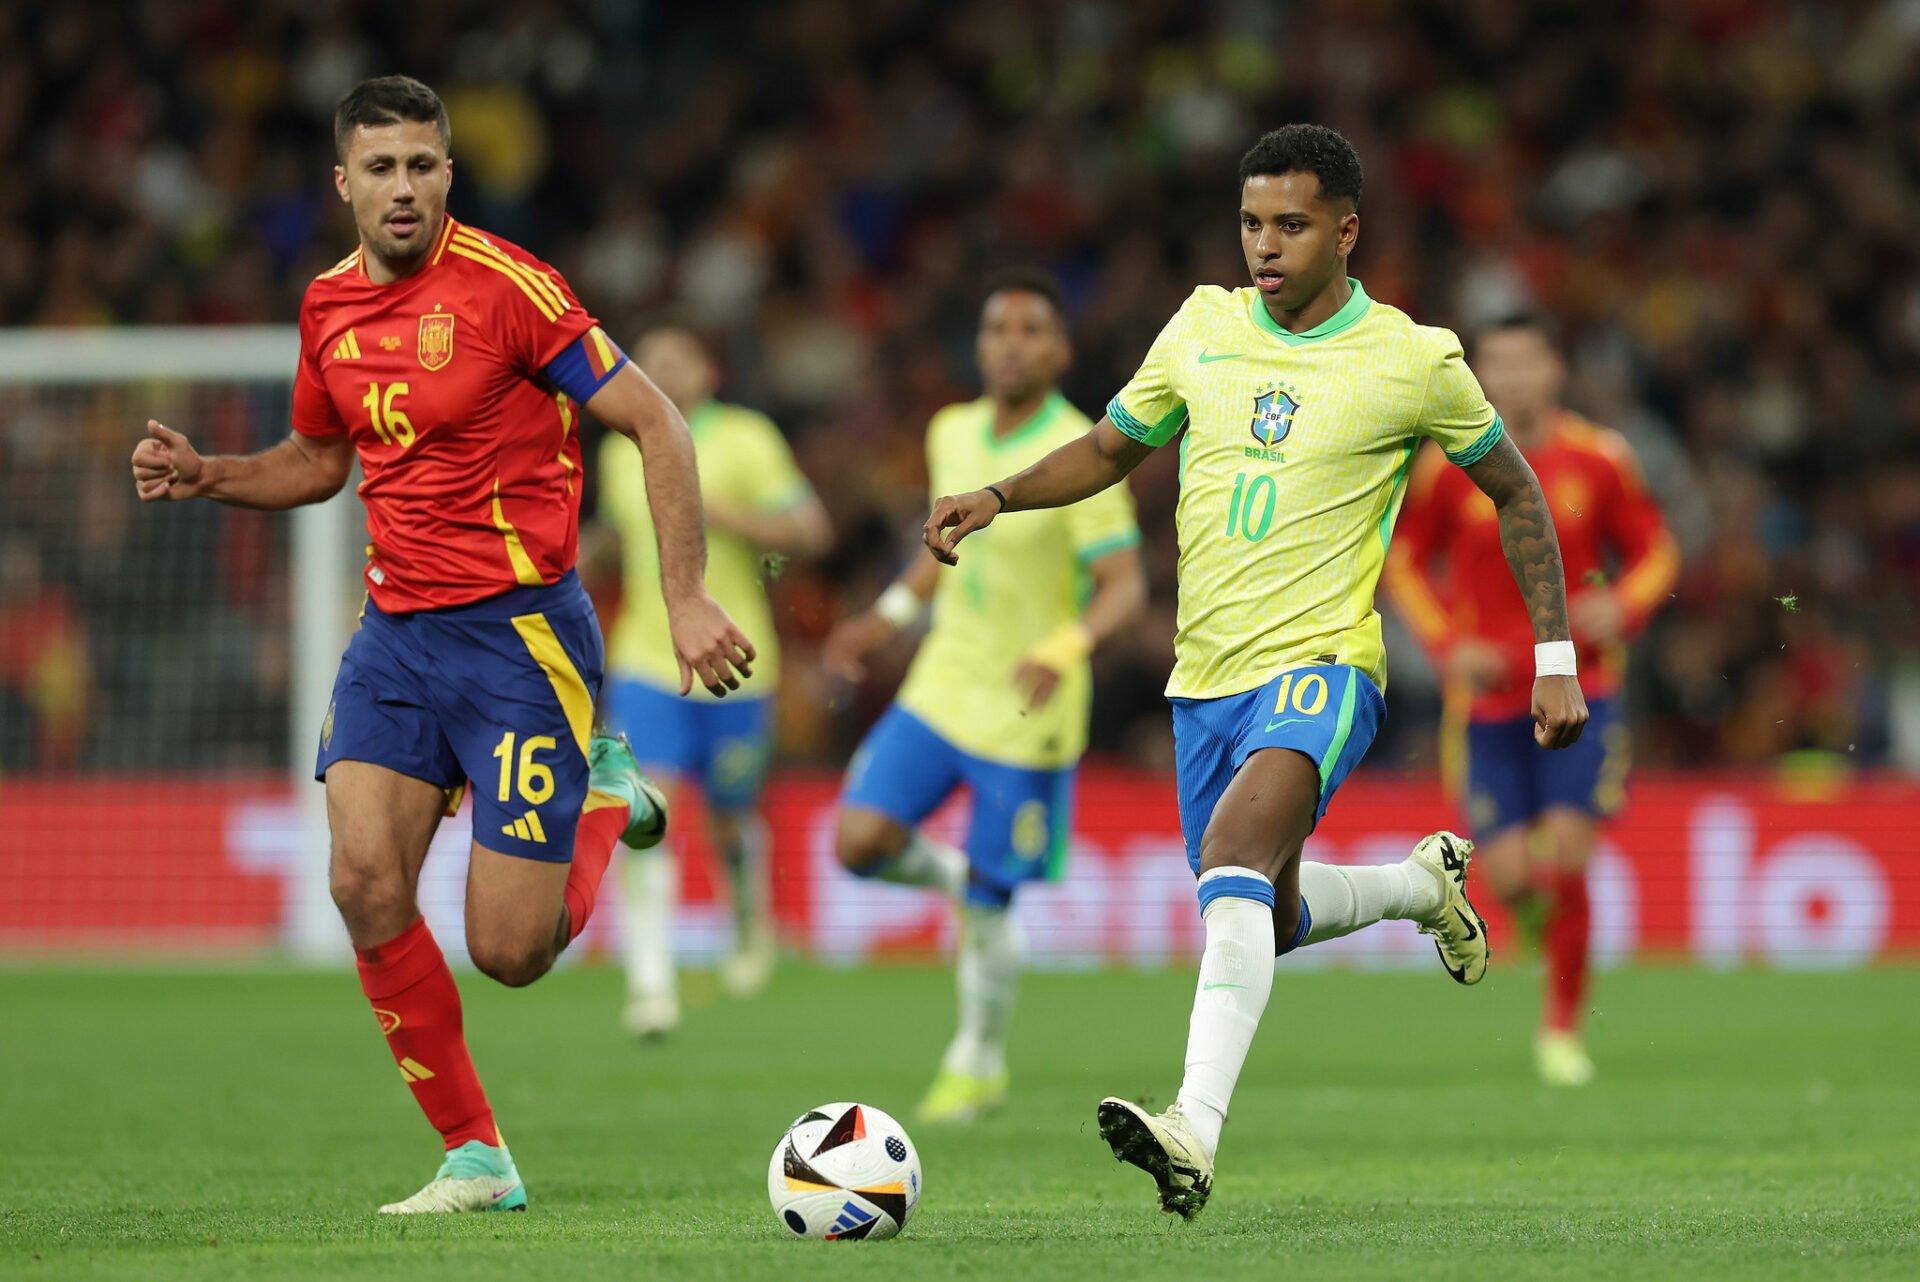 Seleção Brasileira x Espanha – Rodrygo